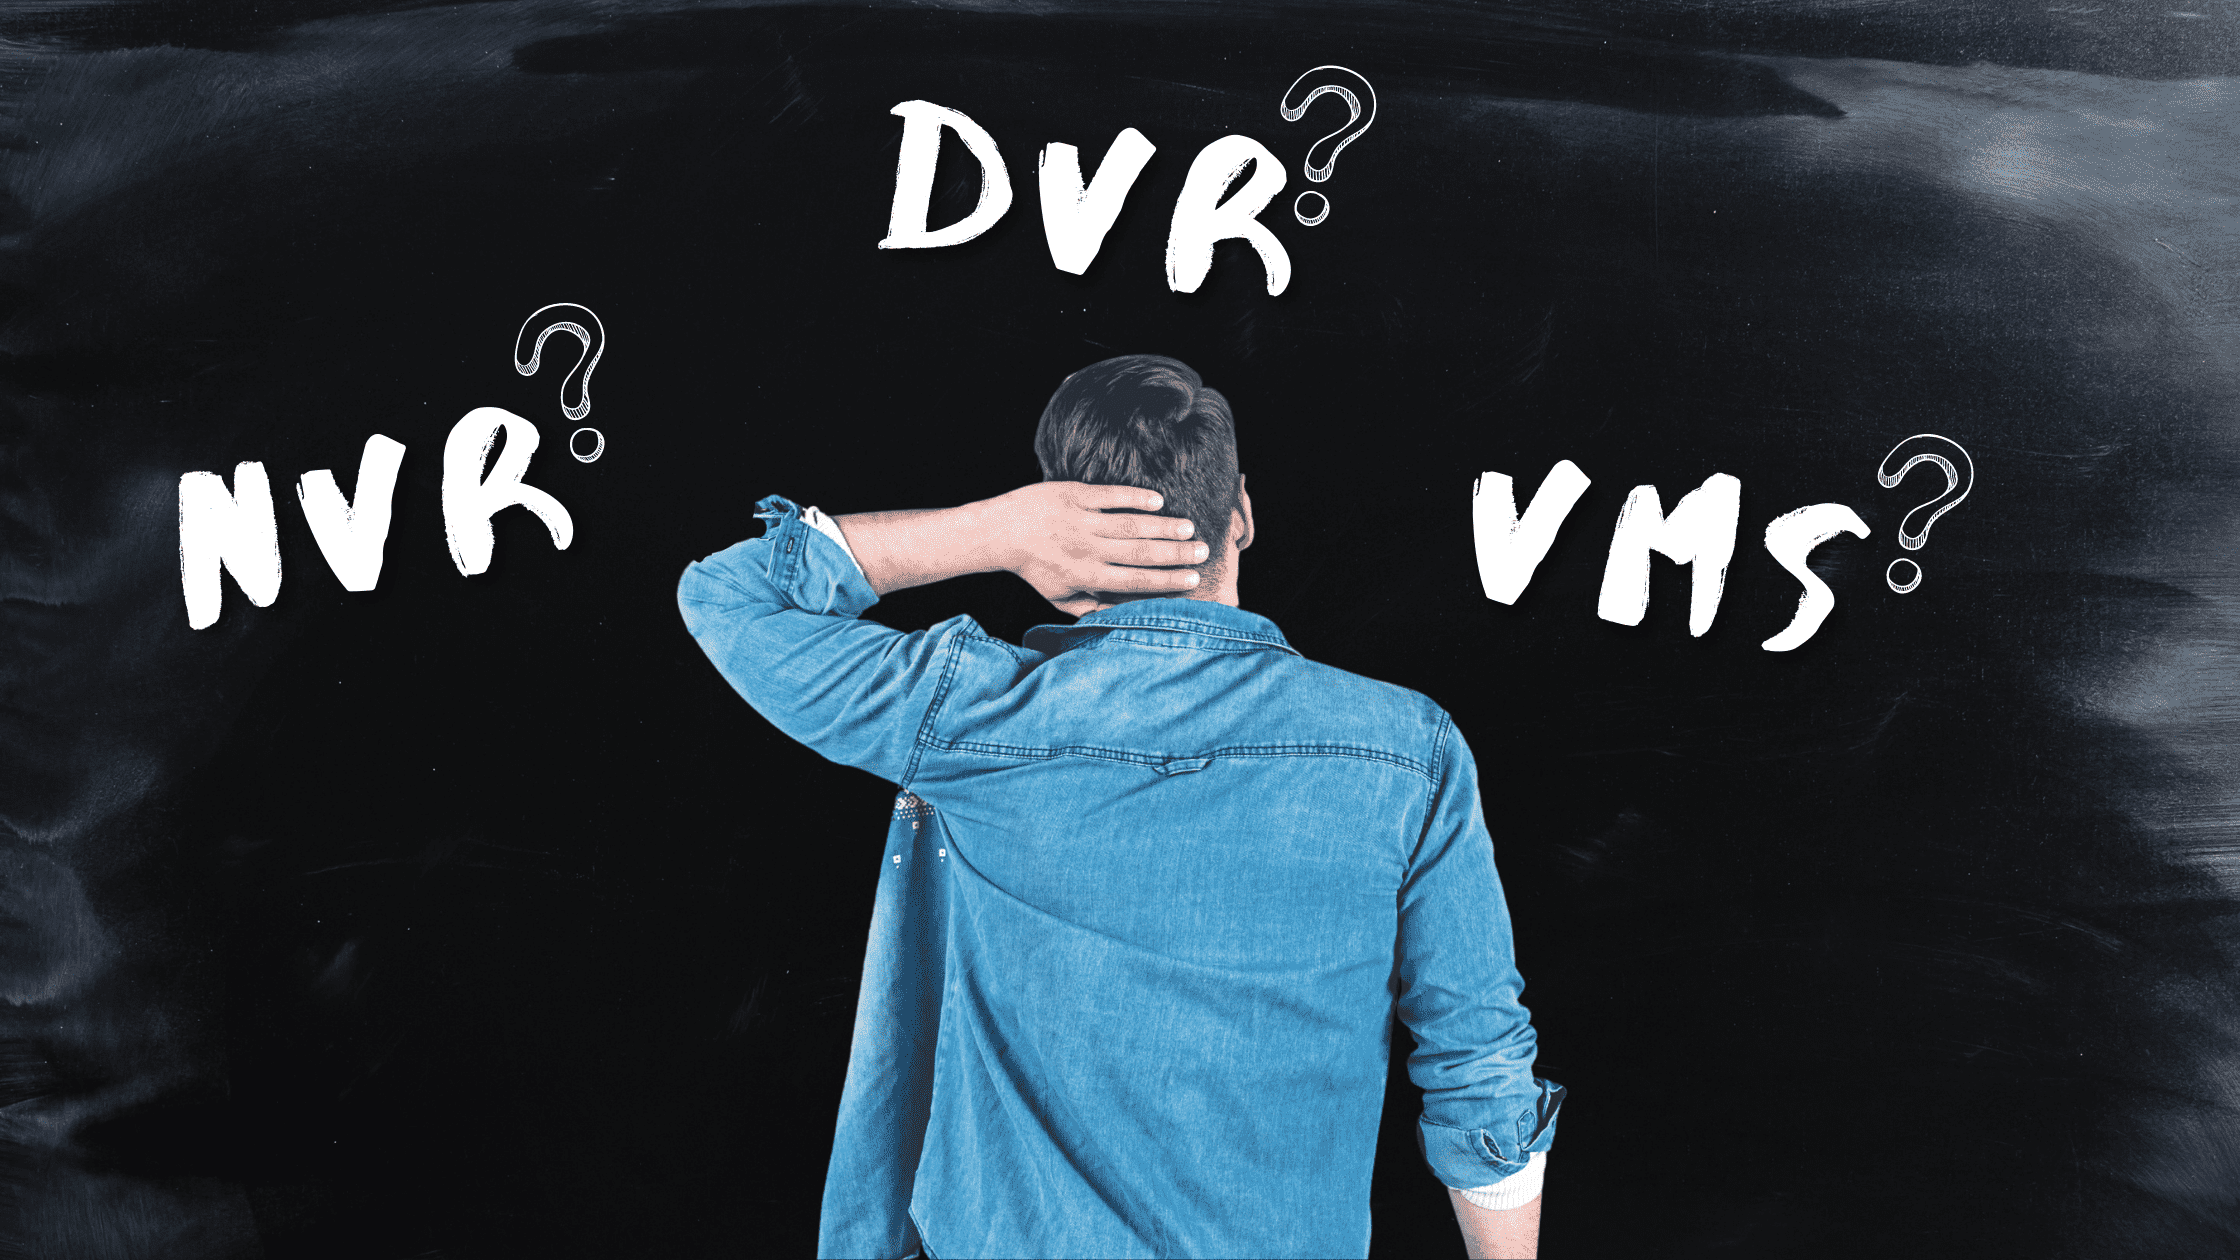 DVR vs NVR vs VMS